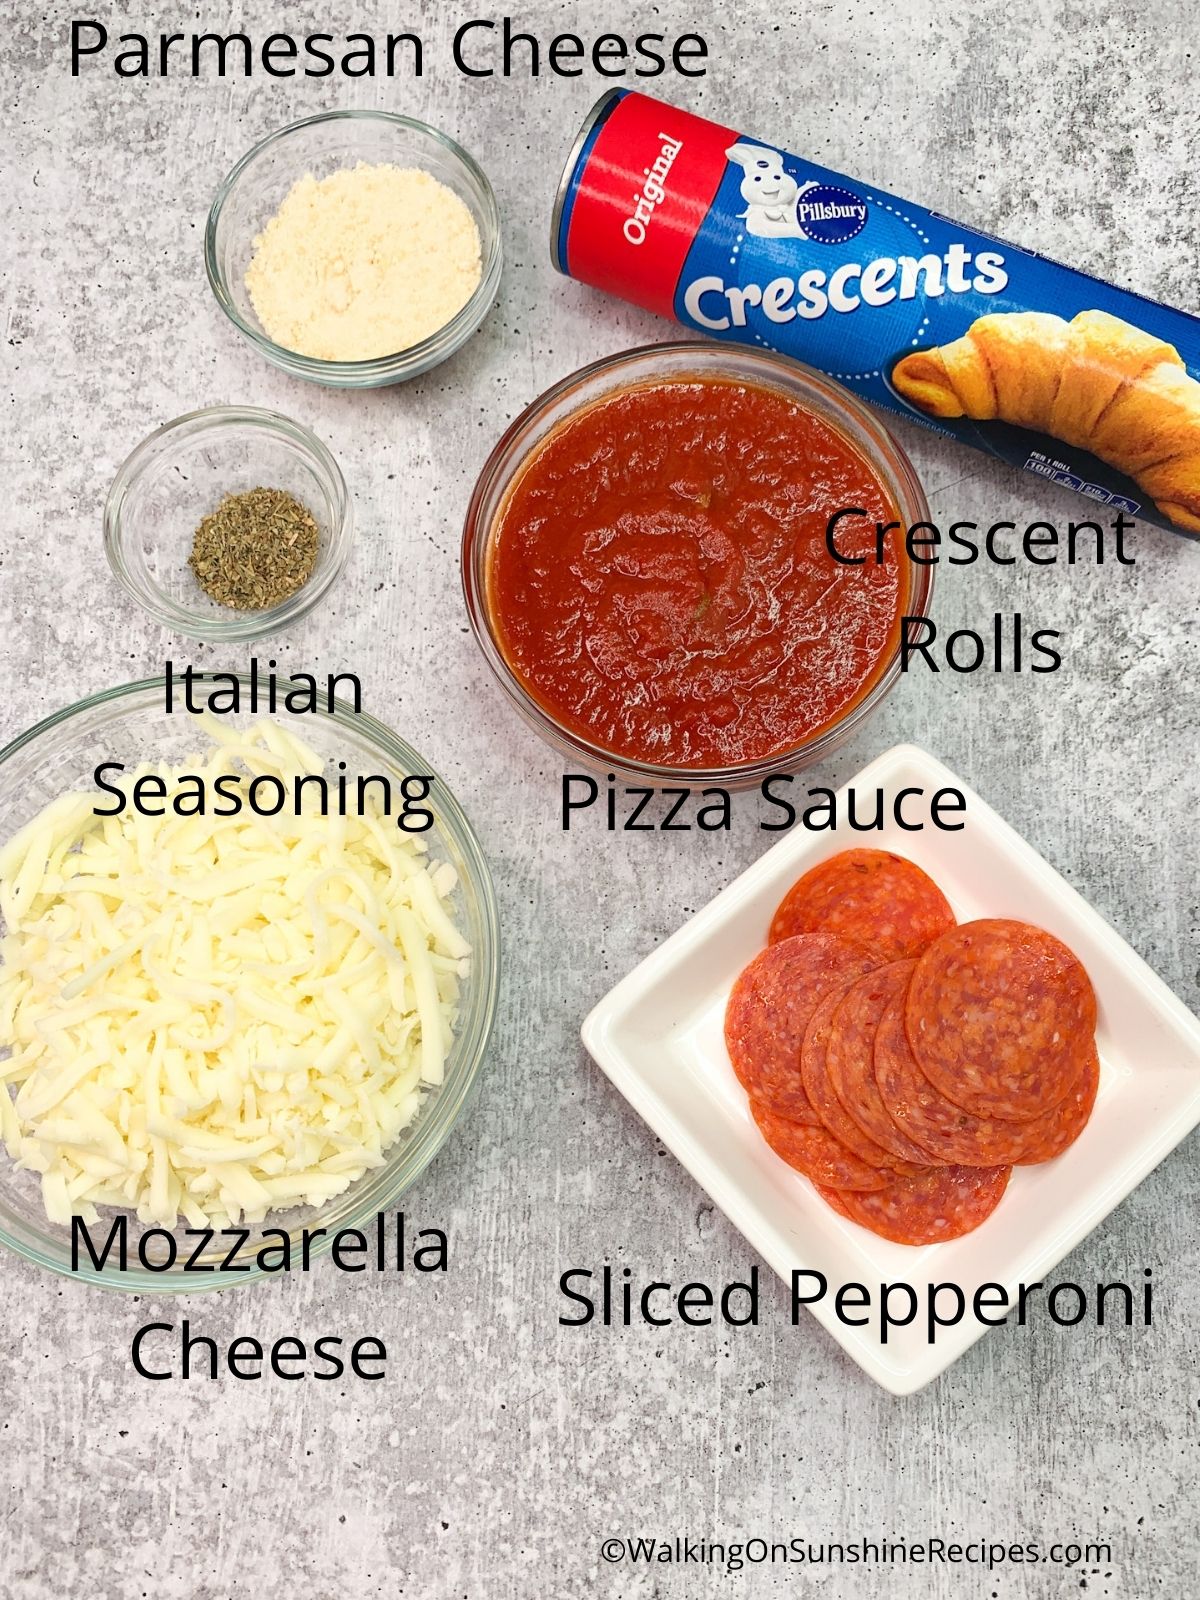 Ingredients.